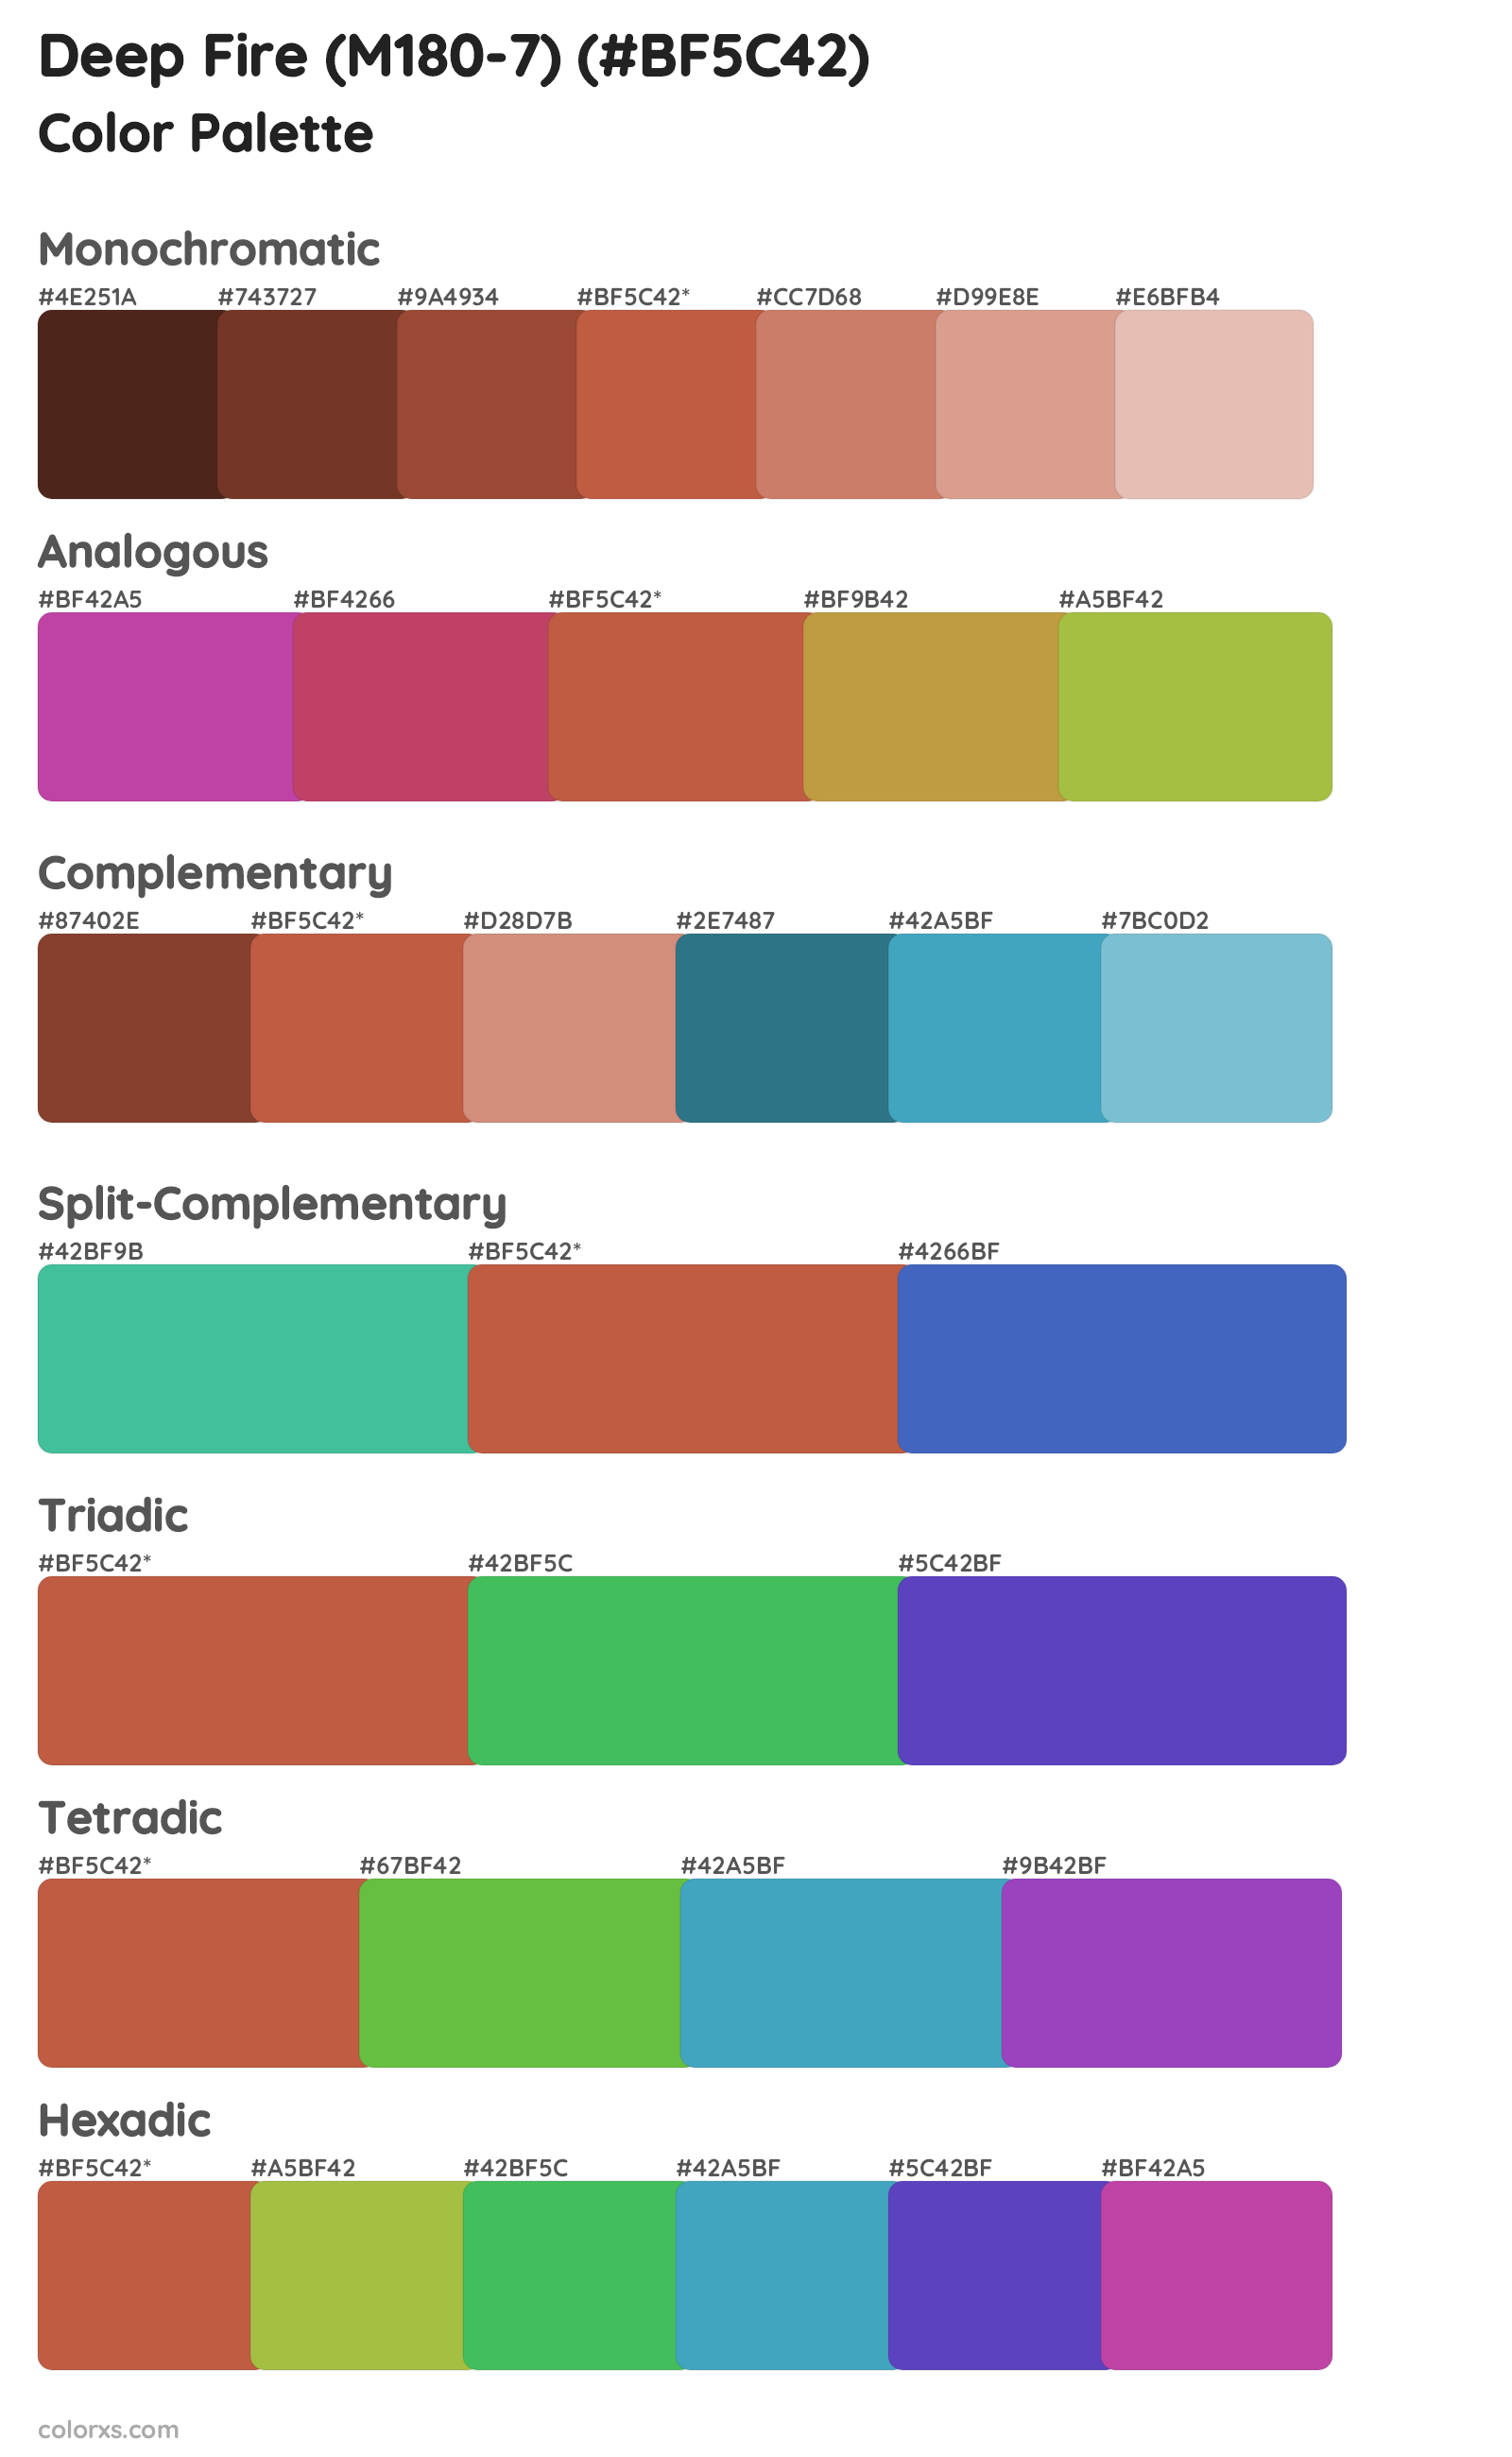 Deep Fire (M180-7) Color Scheme Palettes